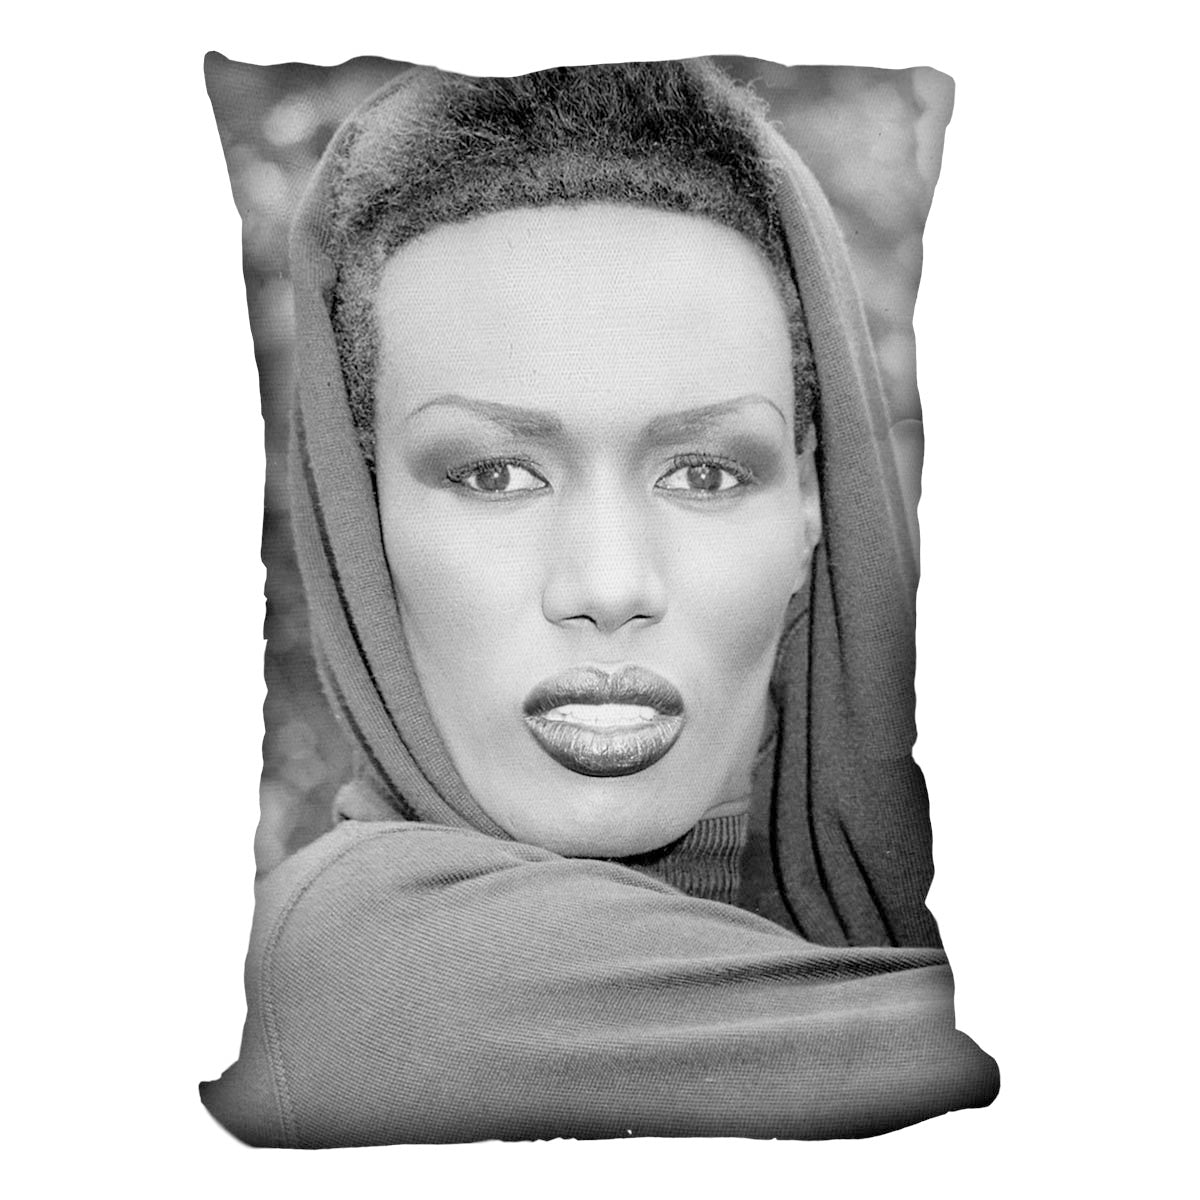 Grace Jones in style Cushion